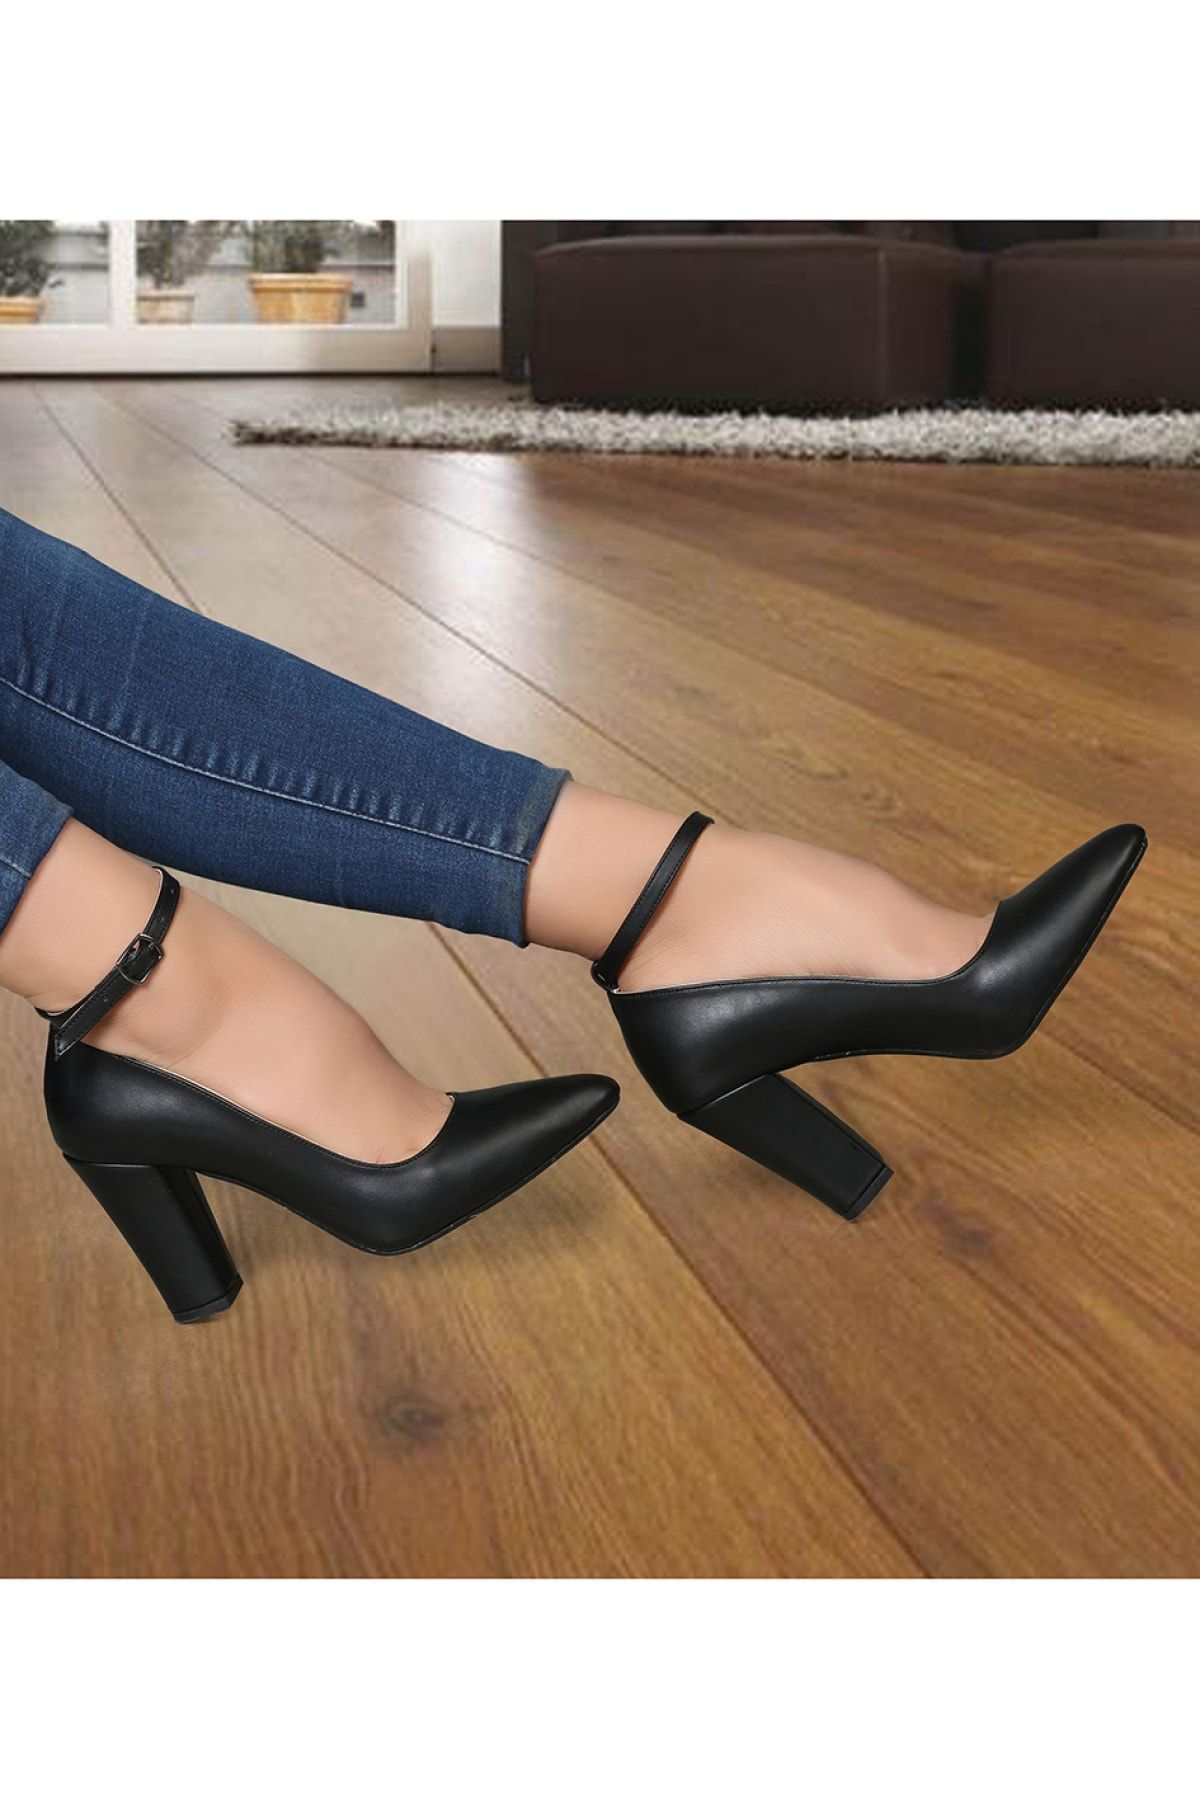 Renas Kadın Siyah Günlük Klasik Kadın Topuklu Ayakkabı R803